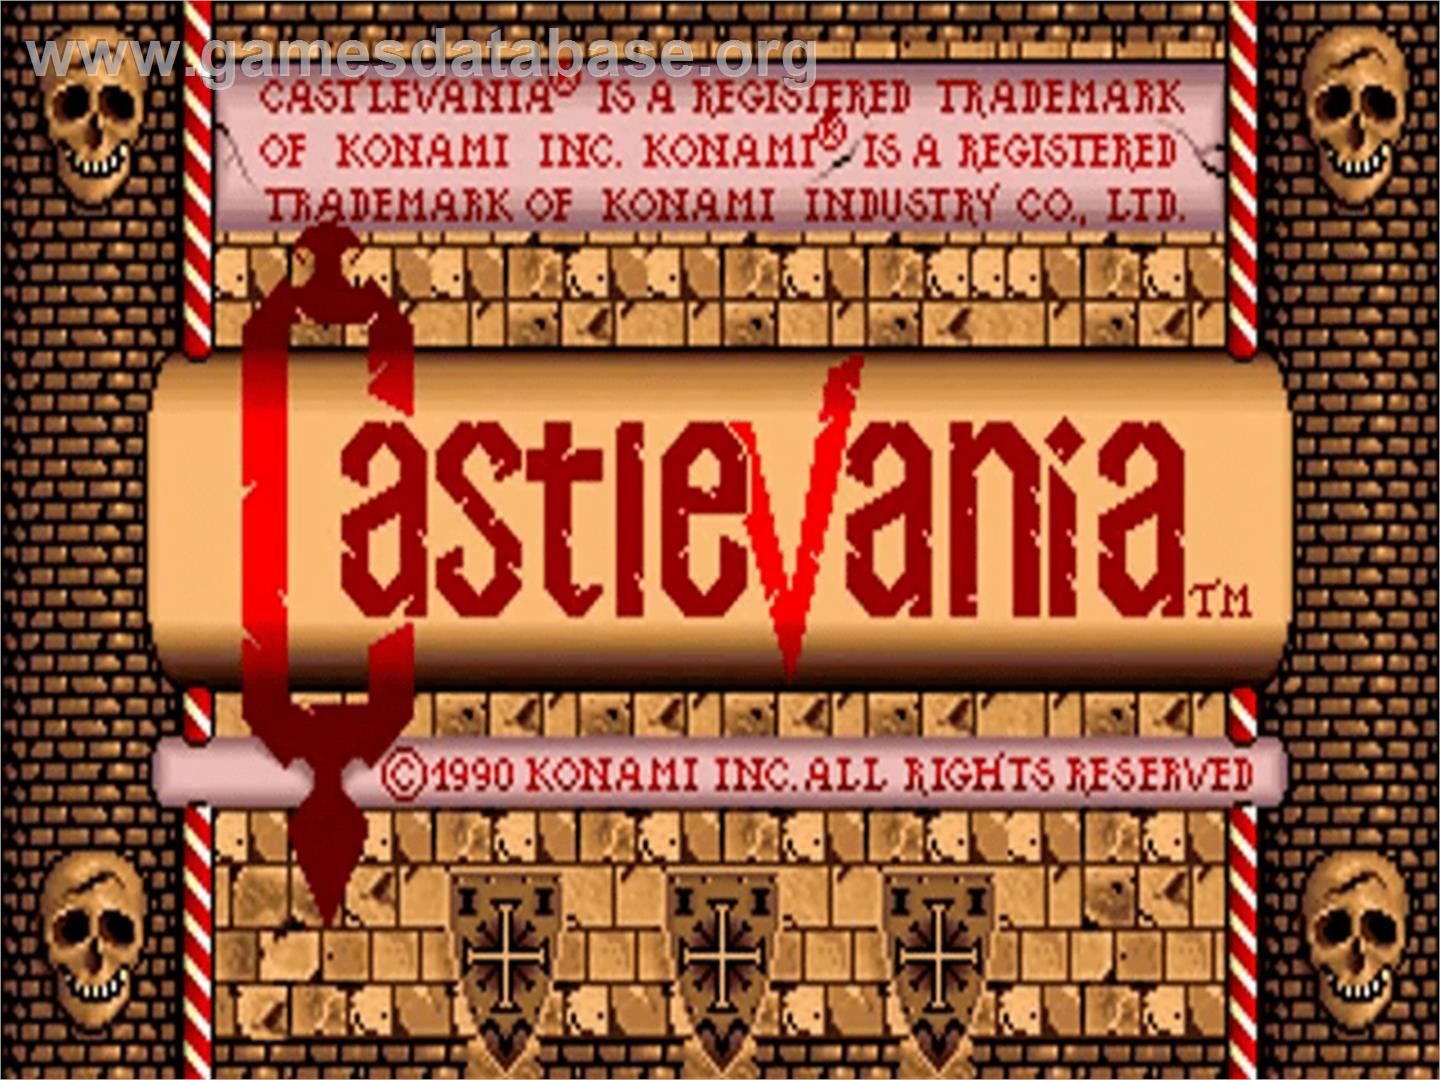 Castlevania - Commodore Amiga - Artwork - Title Screen